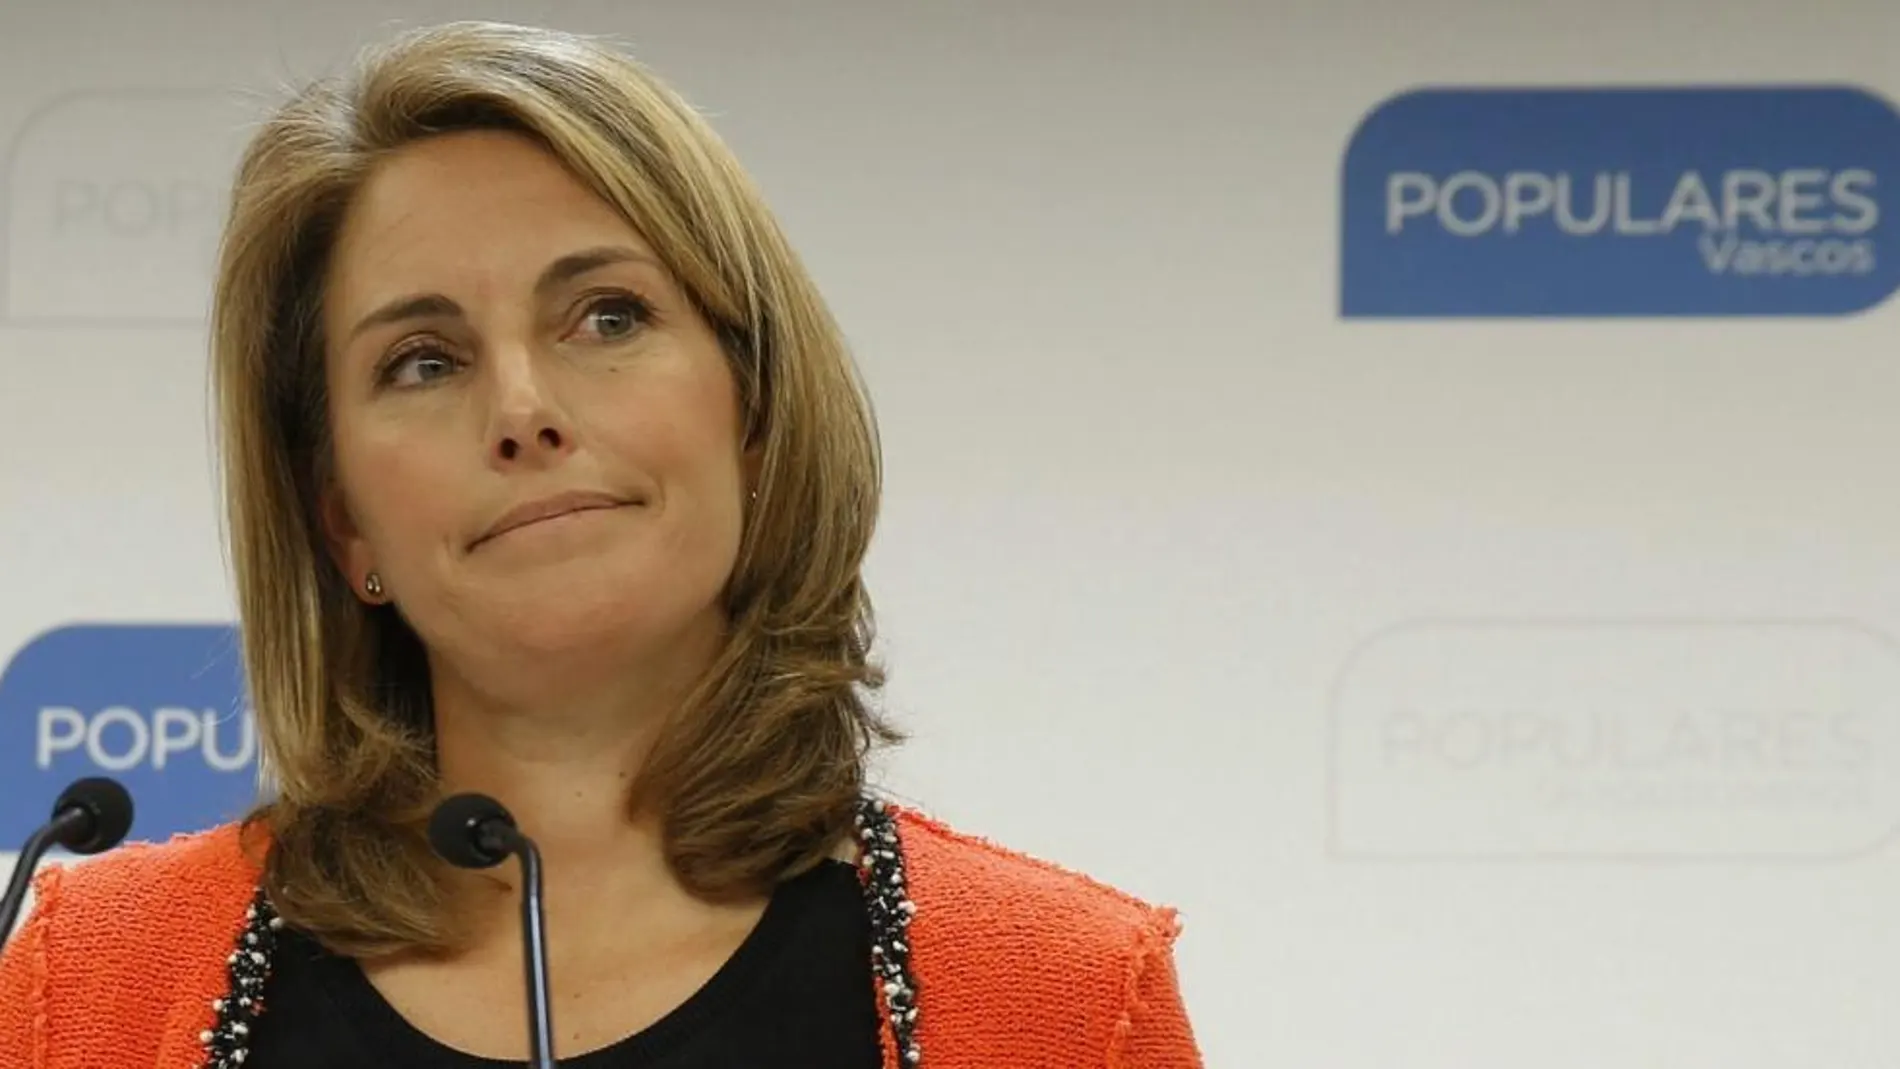 La presidenta del PP del País Vasco, Arantza Quiroga, ha comunicado hoy su decisión de abandonar el cargo